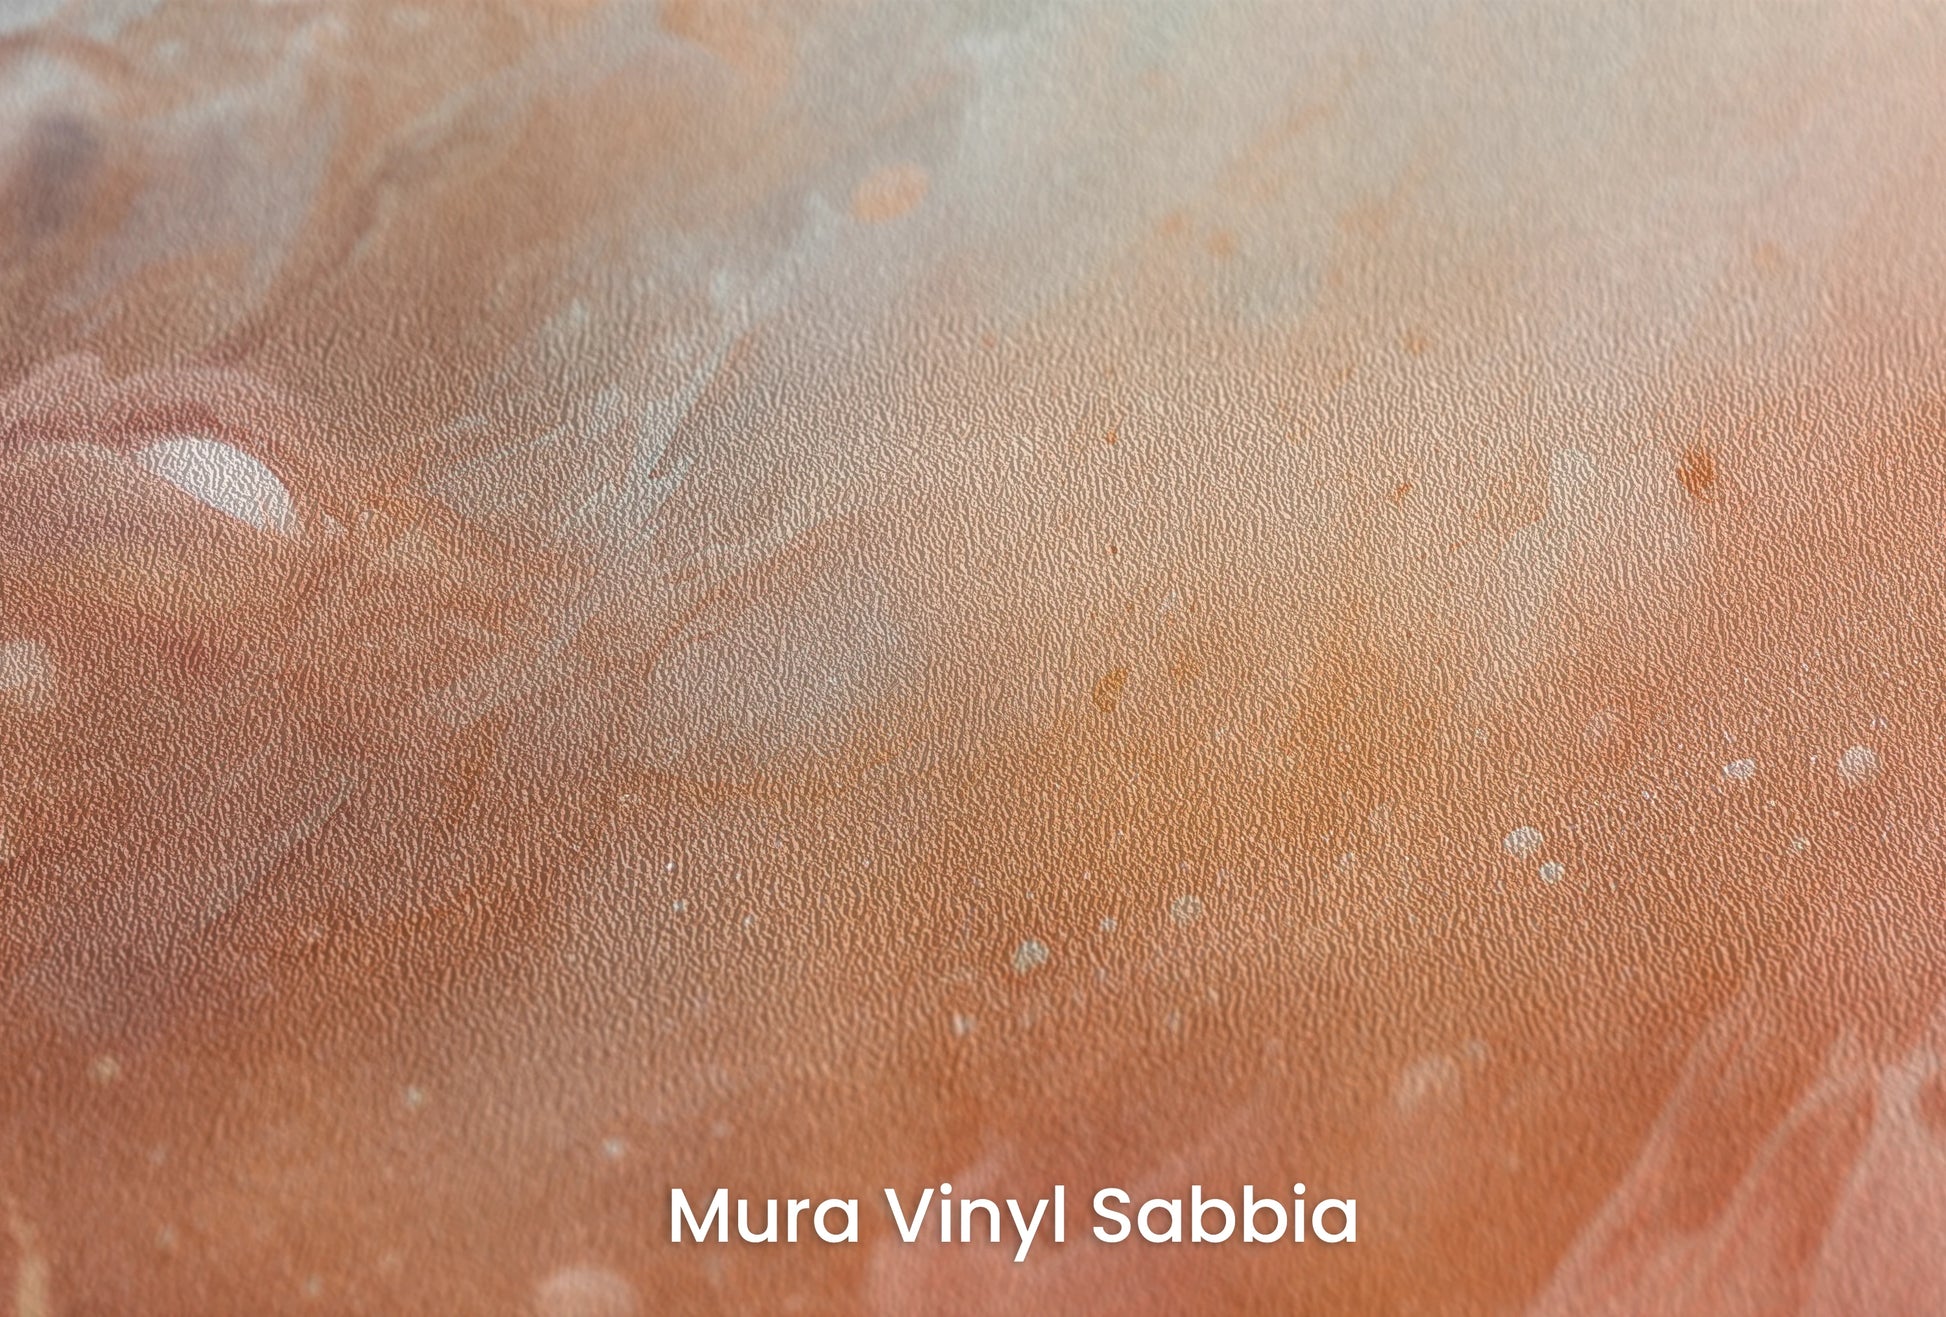 Zbliżenie na artystyczną fototapetę o nazwie Solar Nebula na podłożu Mura Vinyl Sabbia struktura grubego ziarna piasku.